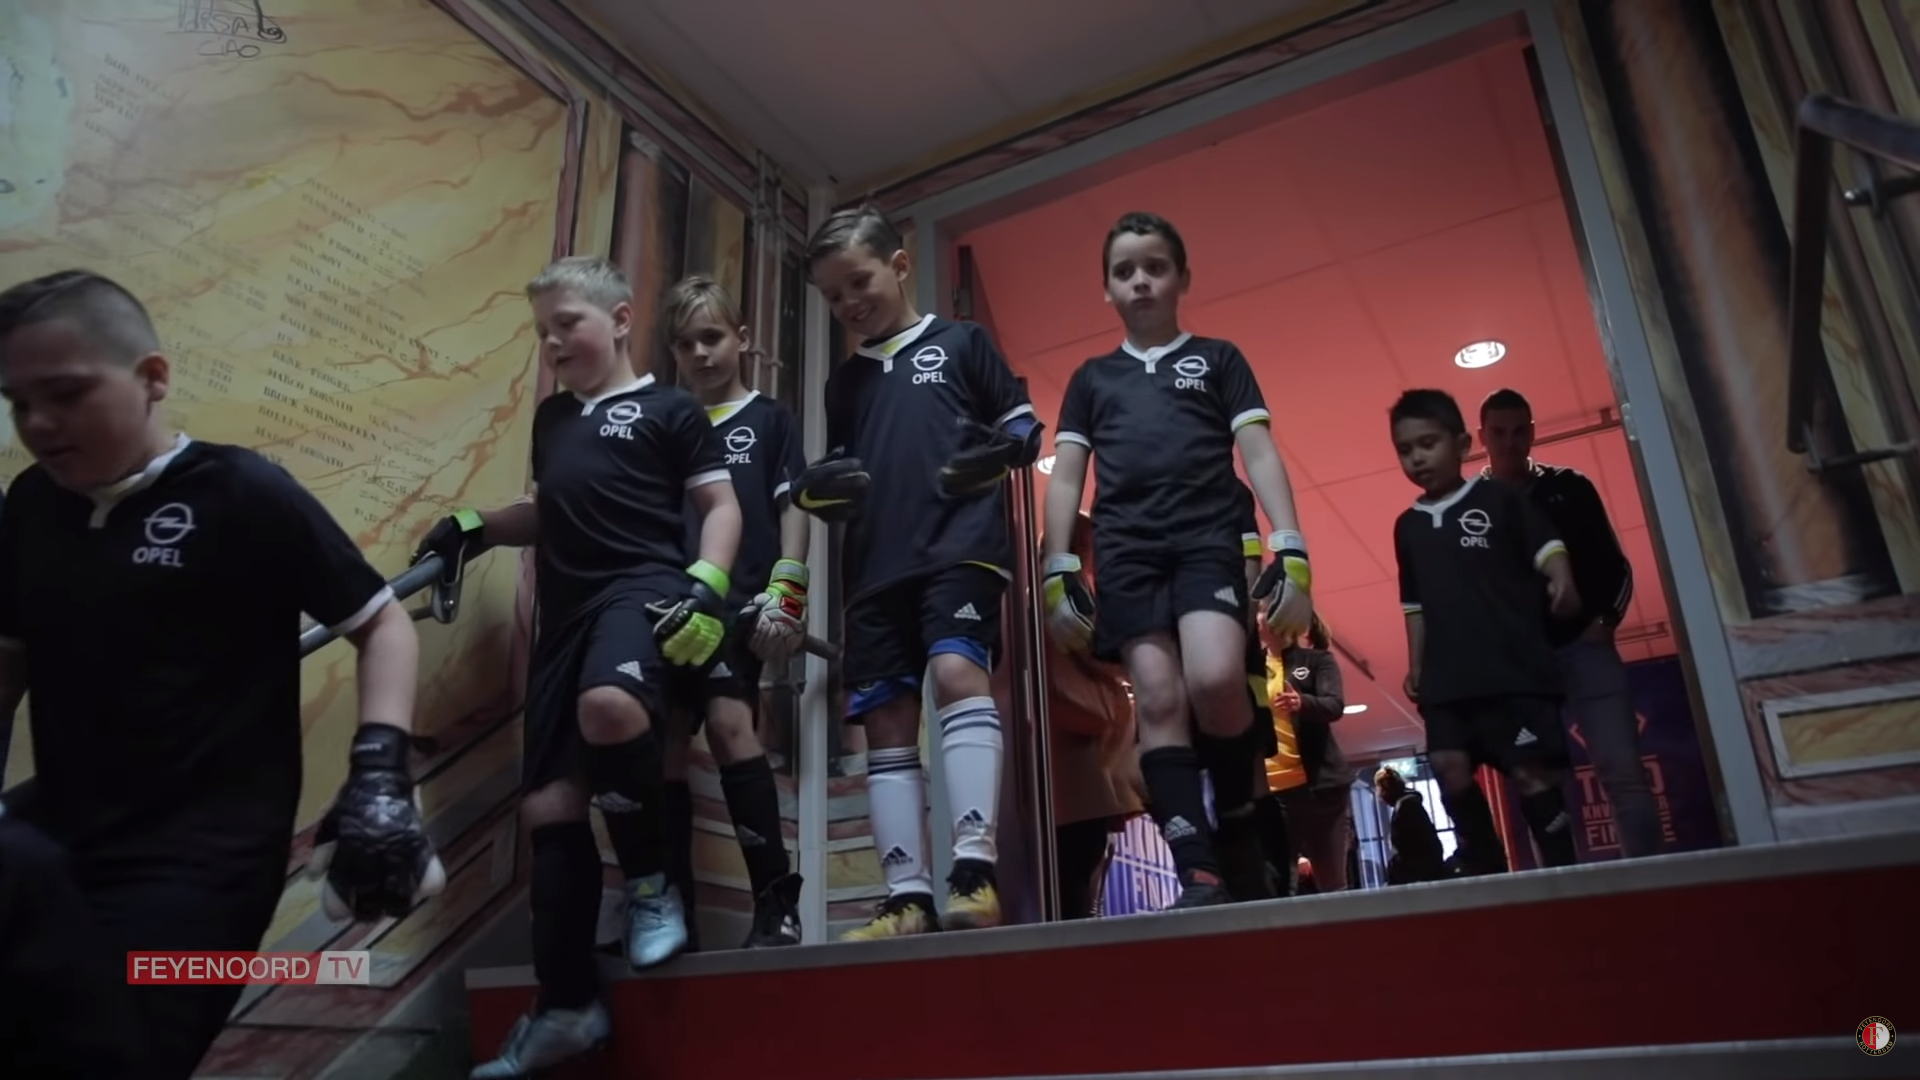 Opel 120 jaar: 120 kids vs 11 Feyenoorders